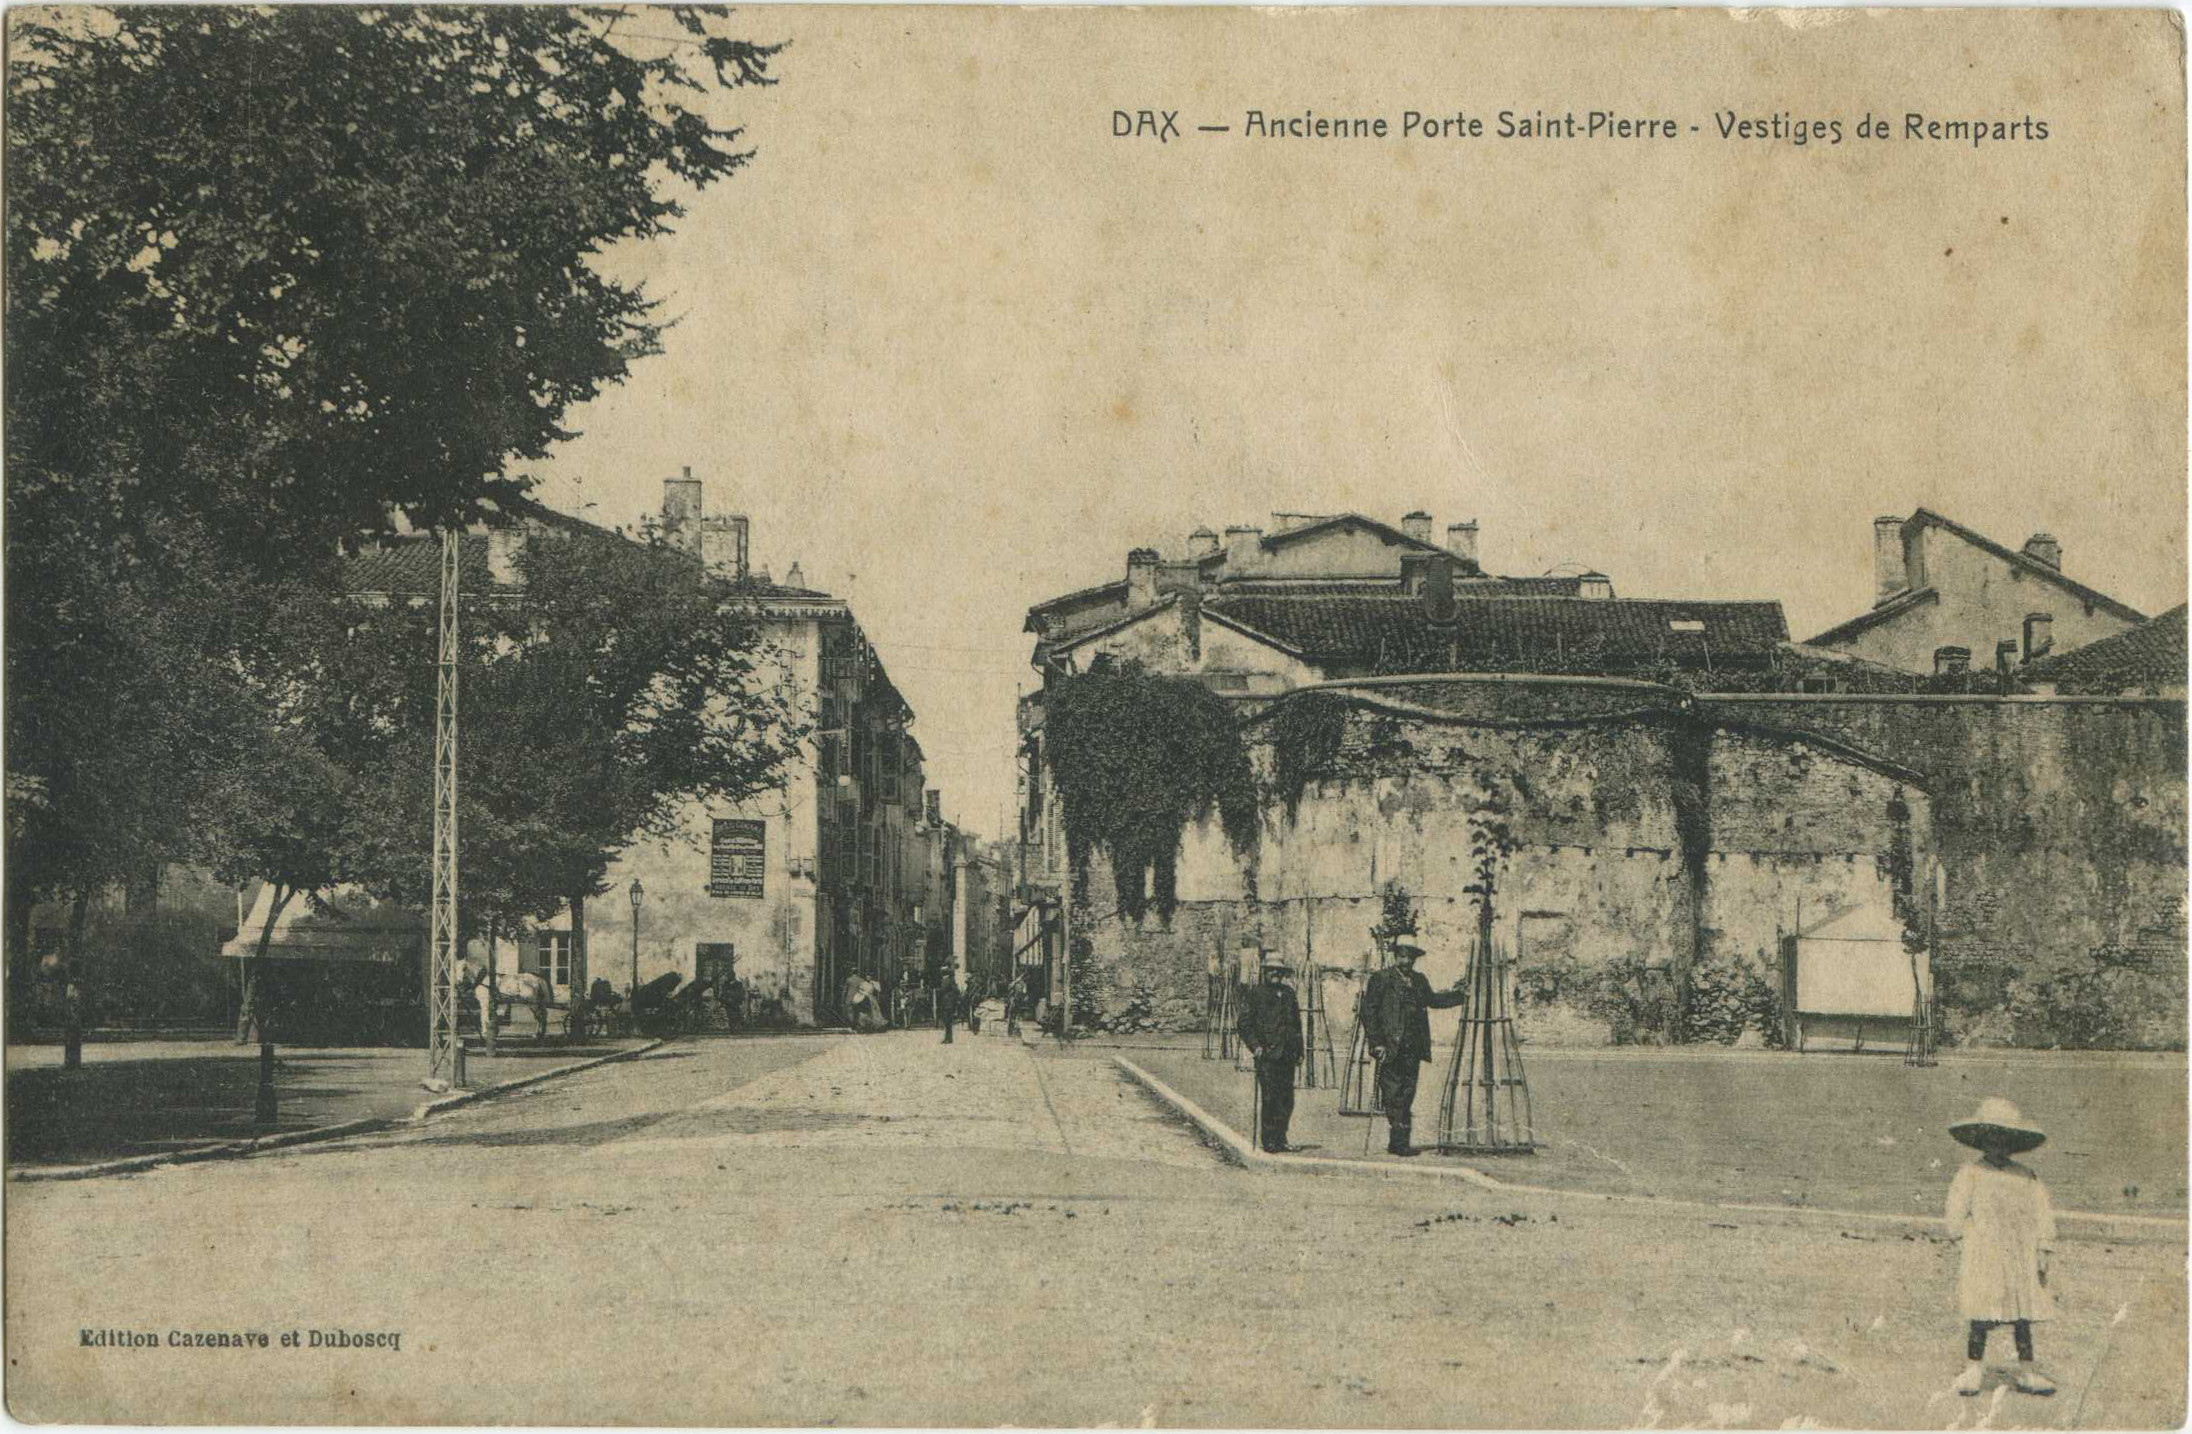 Dax - Ancienne Porte Saint-Pierre - Vestiges de Remparts